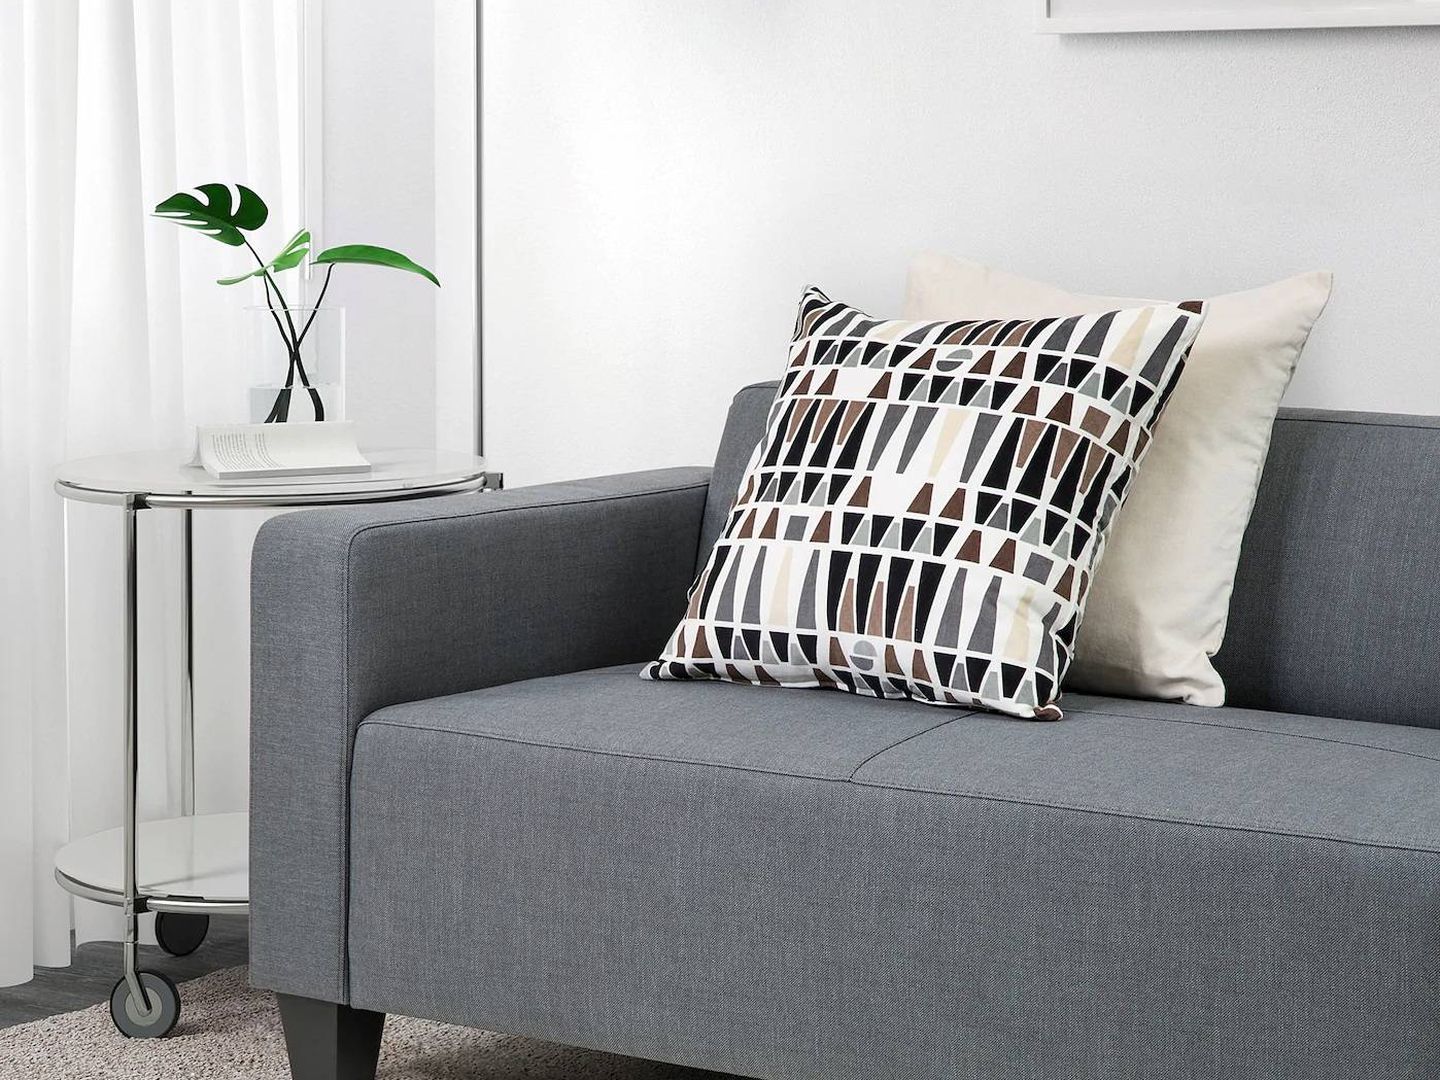 Estos sofás de Ikea son perfectos para salones pequeños, estilosos